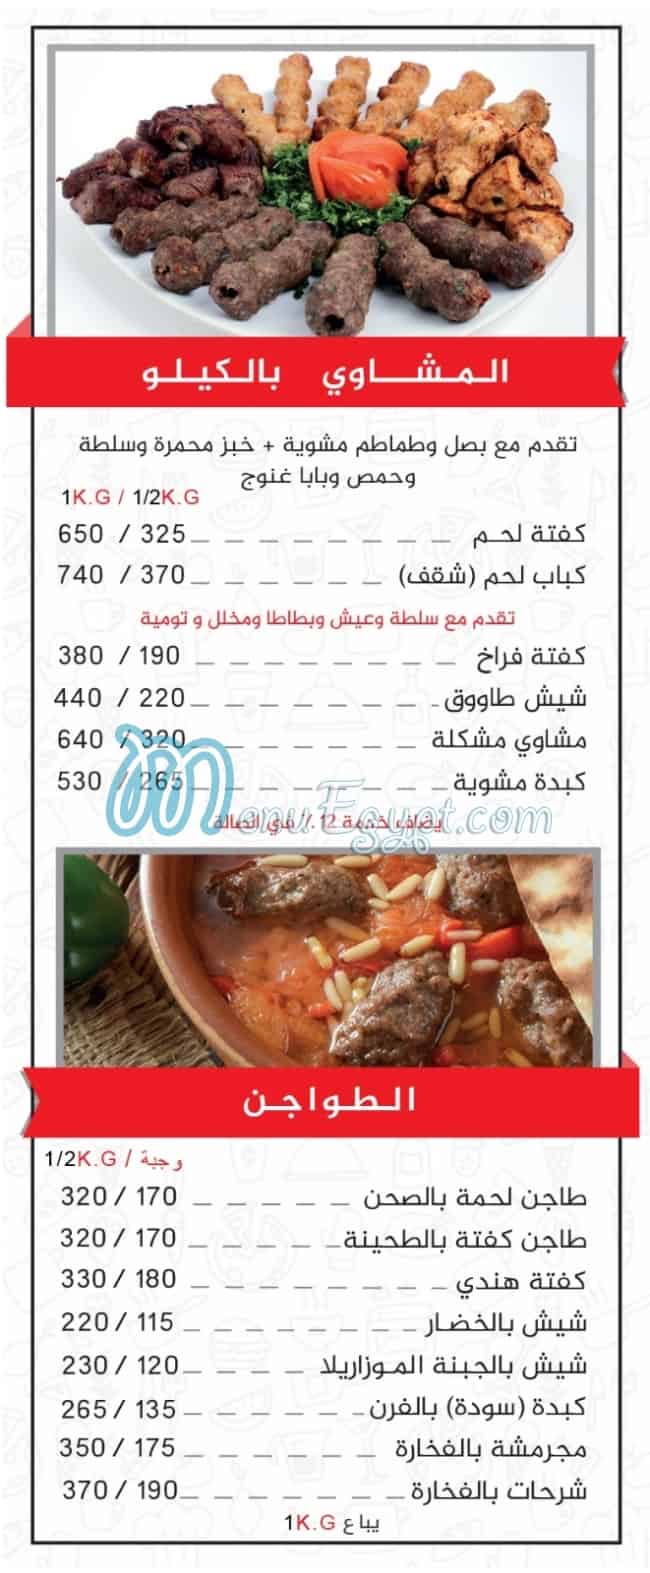 Al Aseel online menu